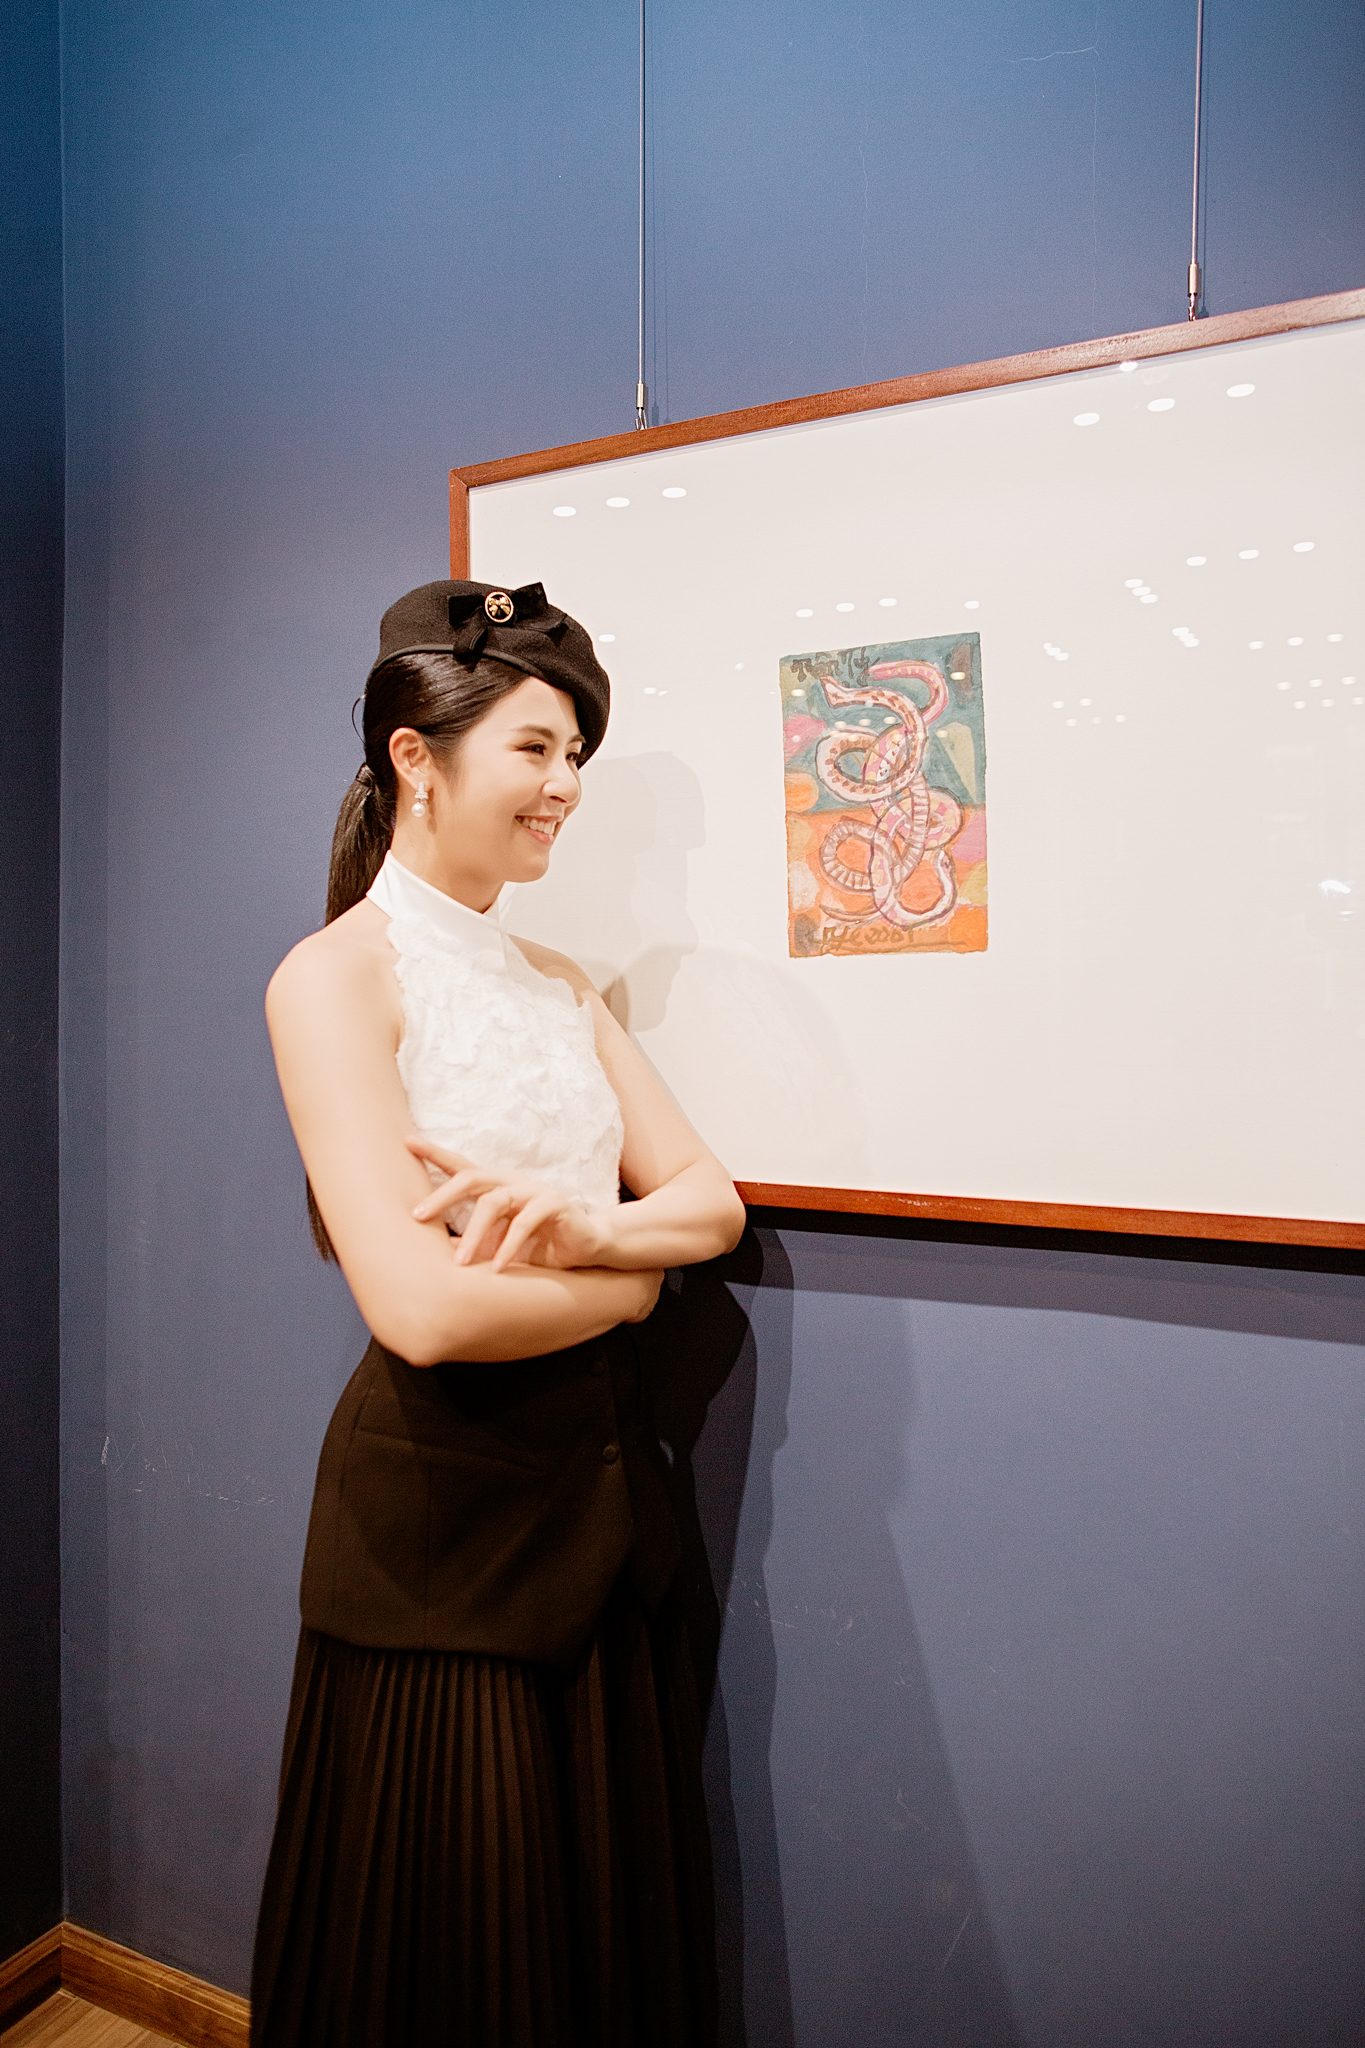 Hoa hậu Ngọc Hân khoe sắc vóc rạng rỡ trong bộ đầm tông đen - trắng với phần cổ được thiết kế cách điệu từ áo yếm truyền thống. Ảnh: Nhân vật cung cấp